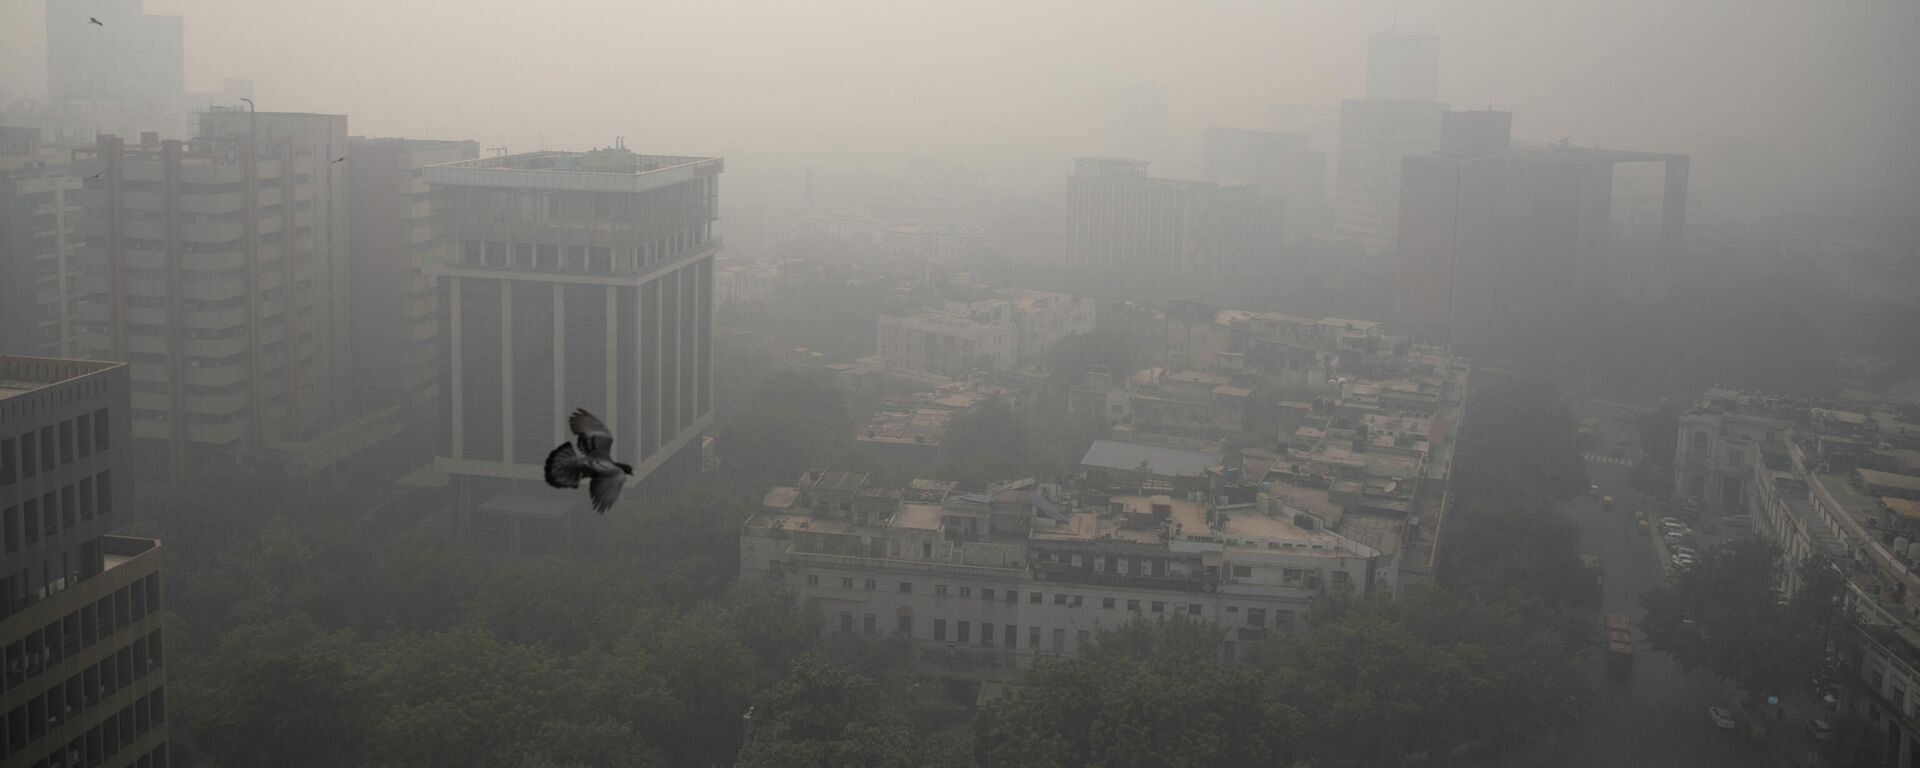 Smog envelopes the skyline in New Delhi, India, Wednesday, Nov. 4, 2020 - Sputnik International, 1920, 13.10.2021